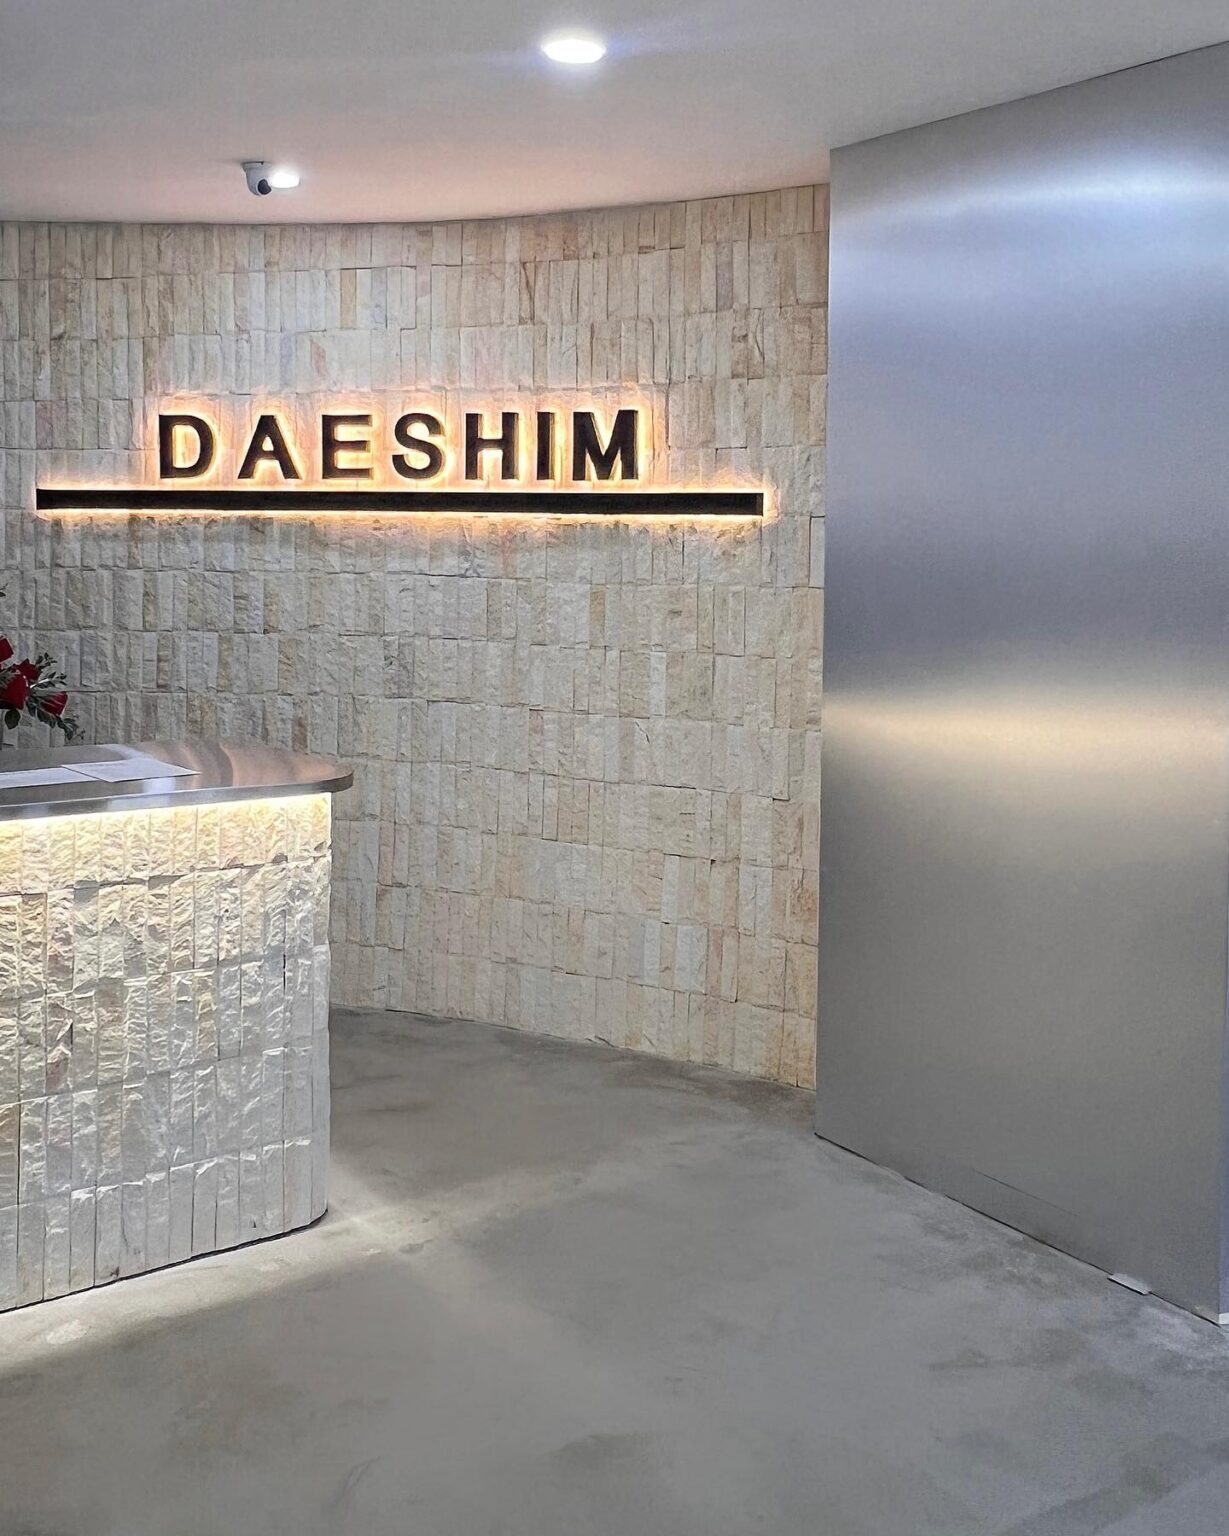 Daeshim Coffee